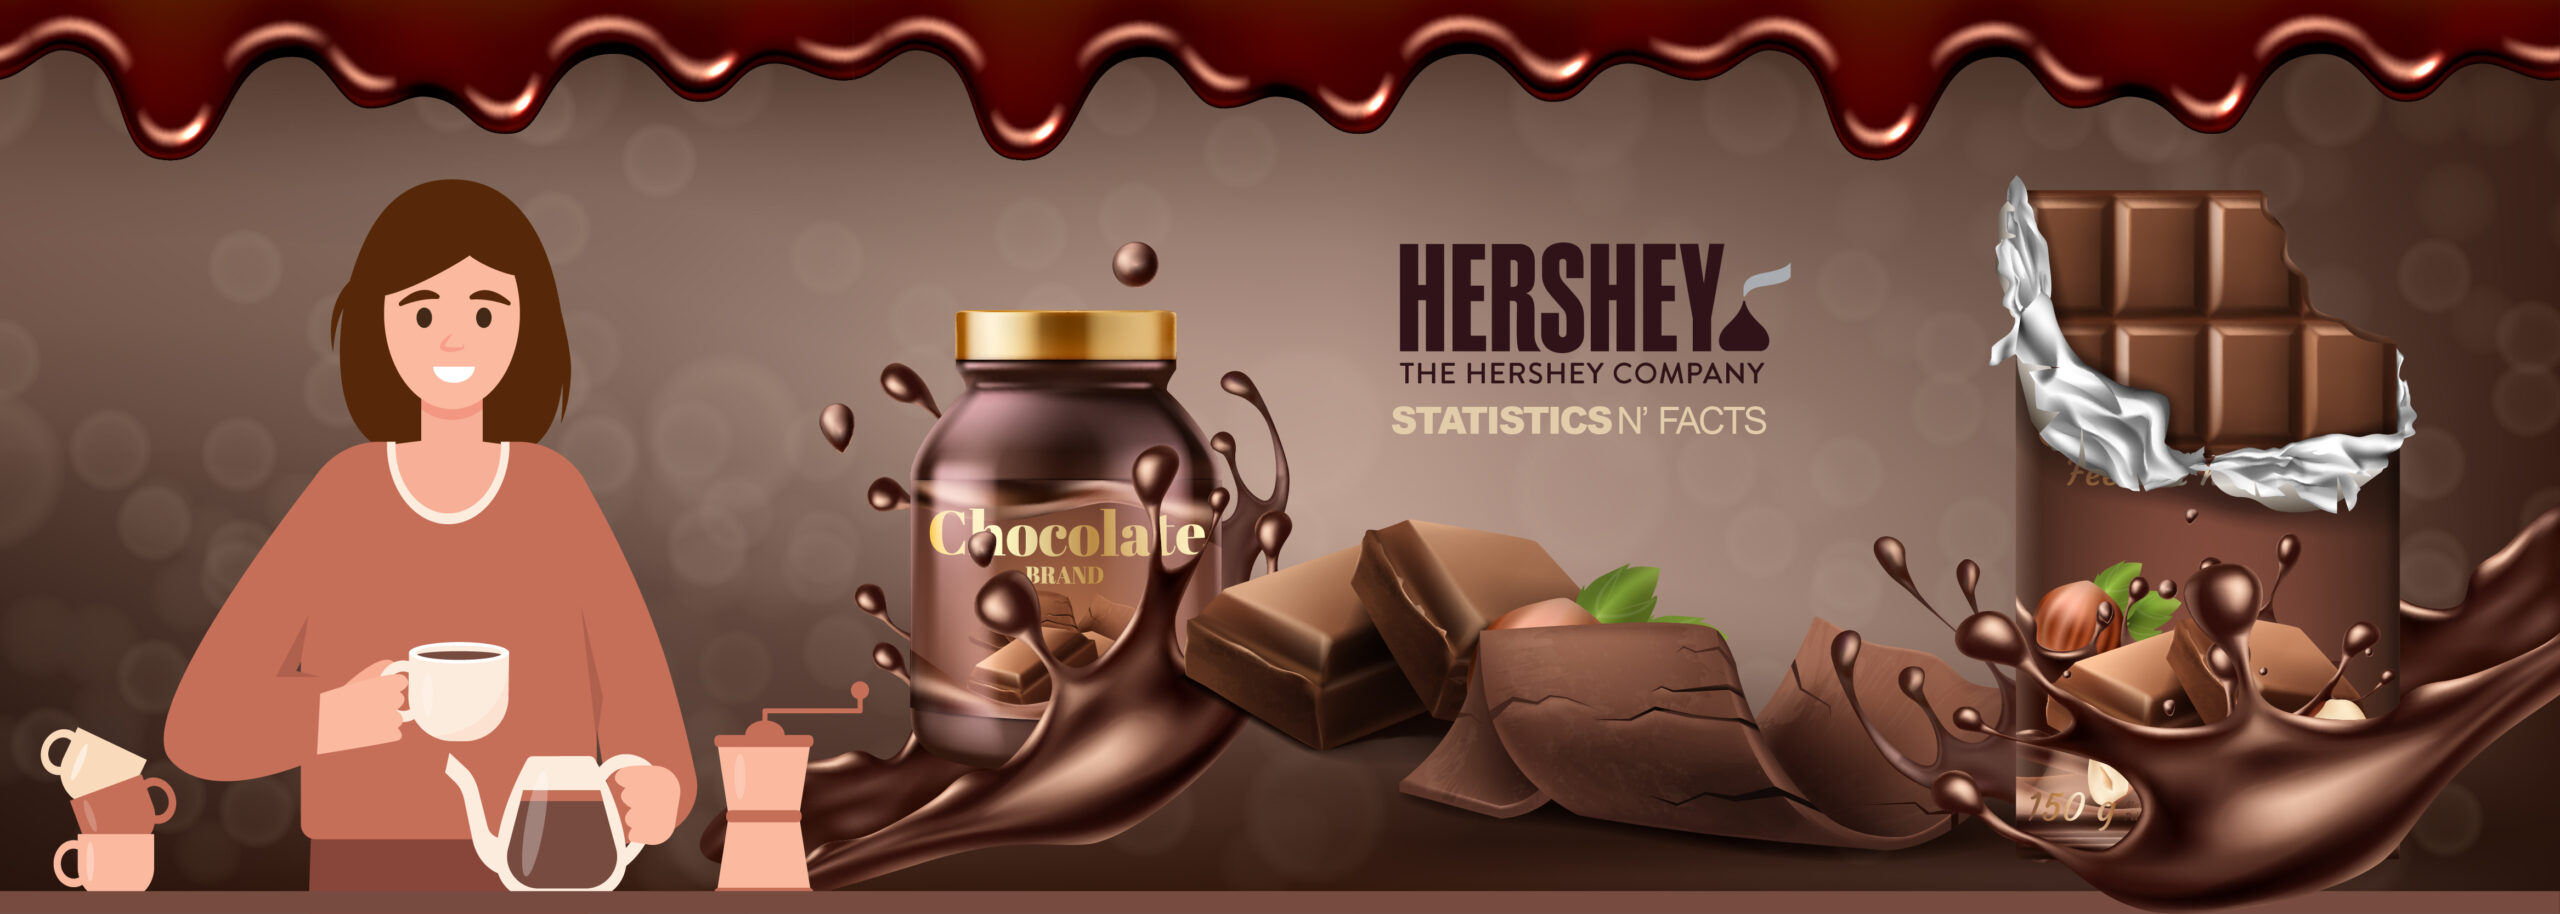 Hershay Company Statistics